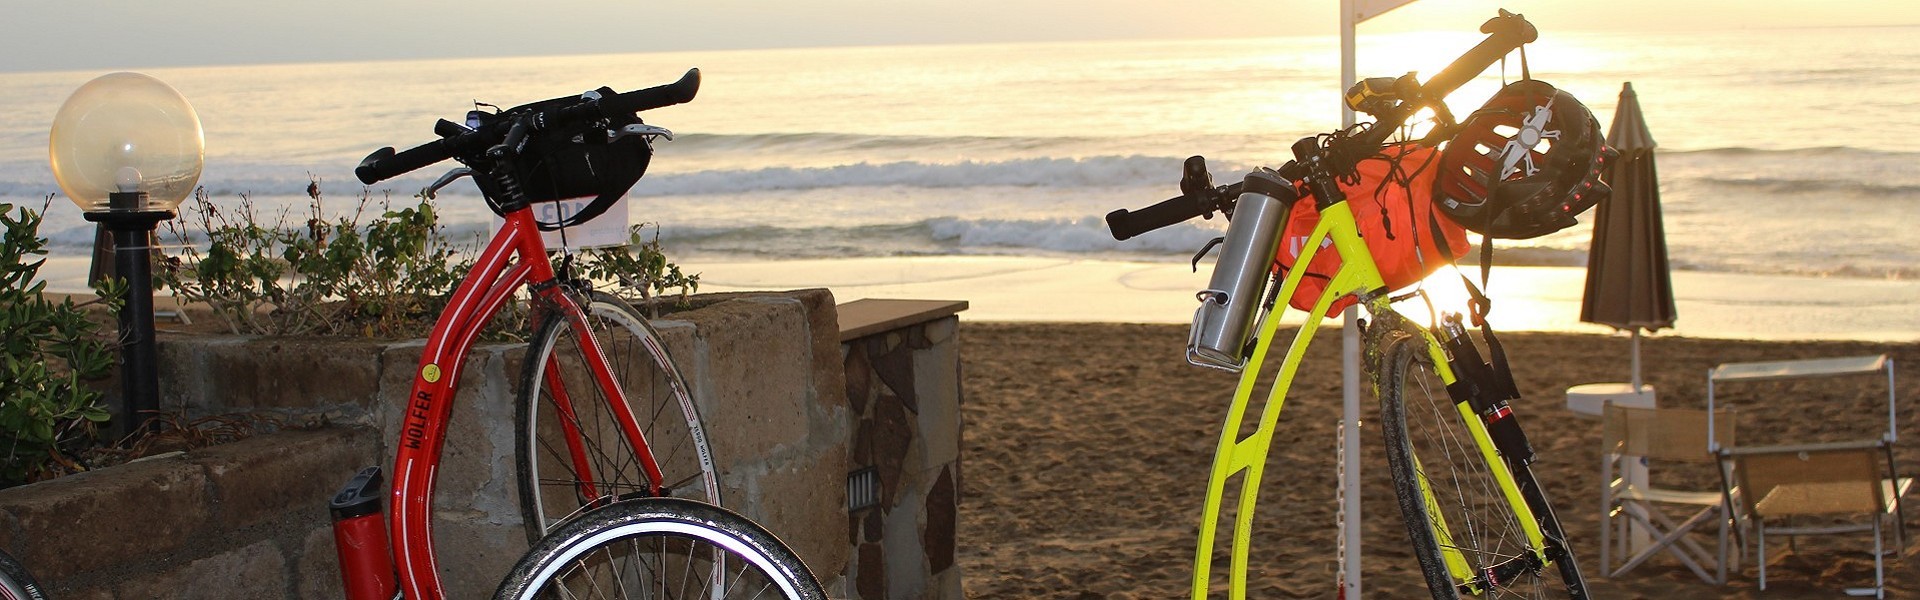 bici elettrica migliore | migliore bici elettrica in salita | noleggio bici mtb genova